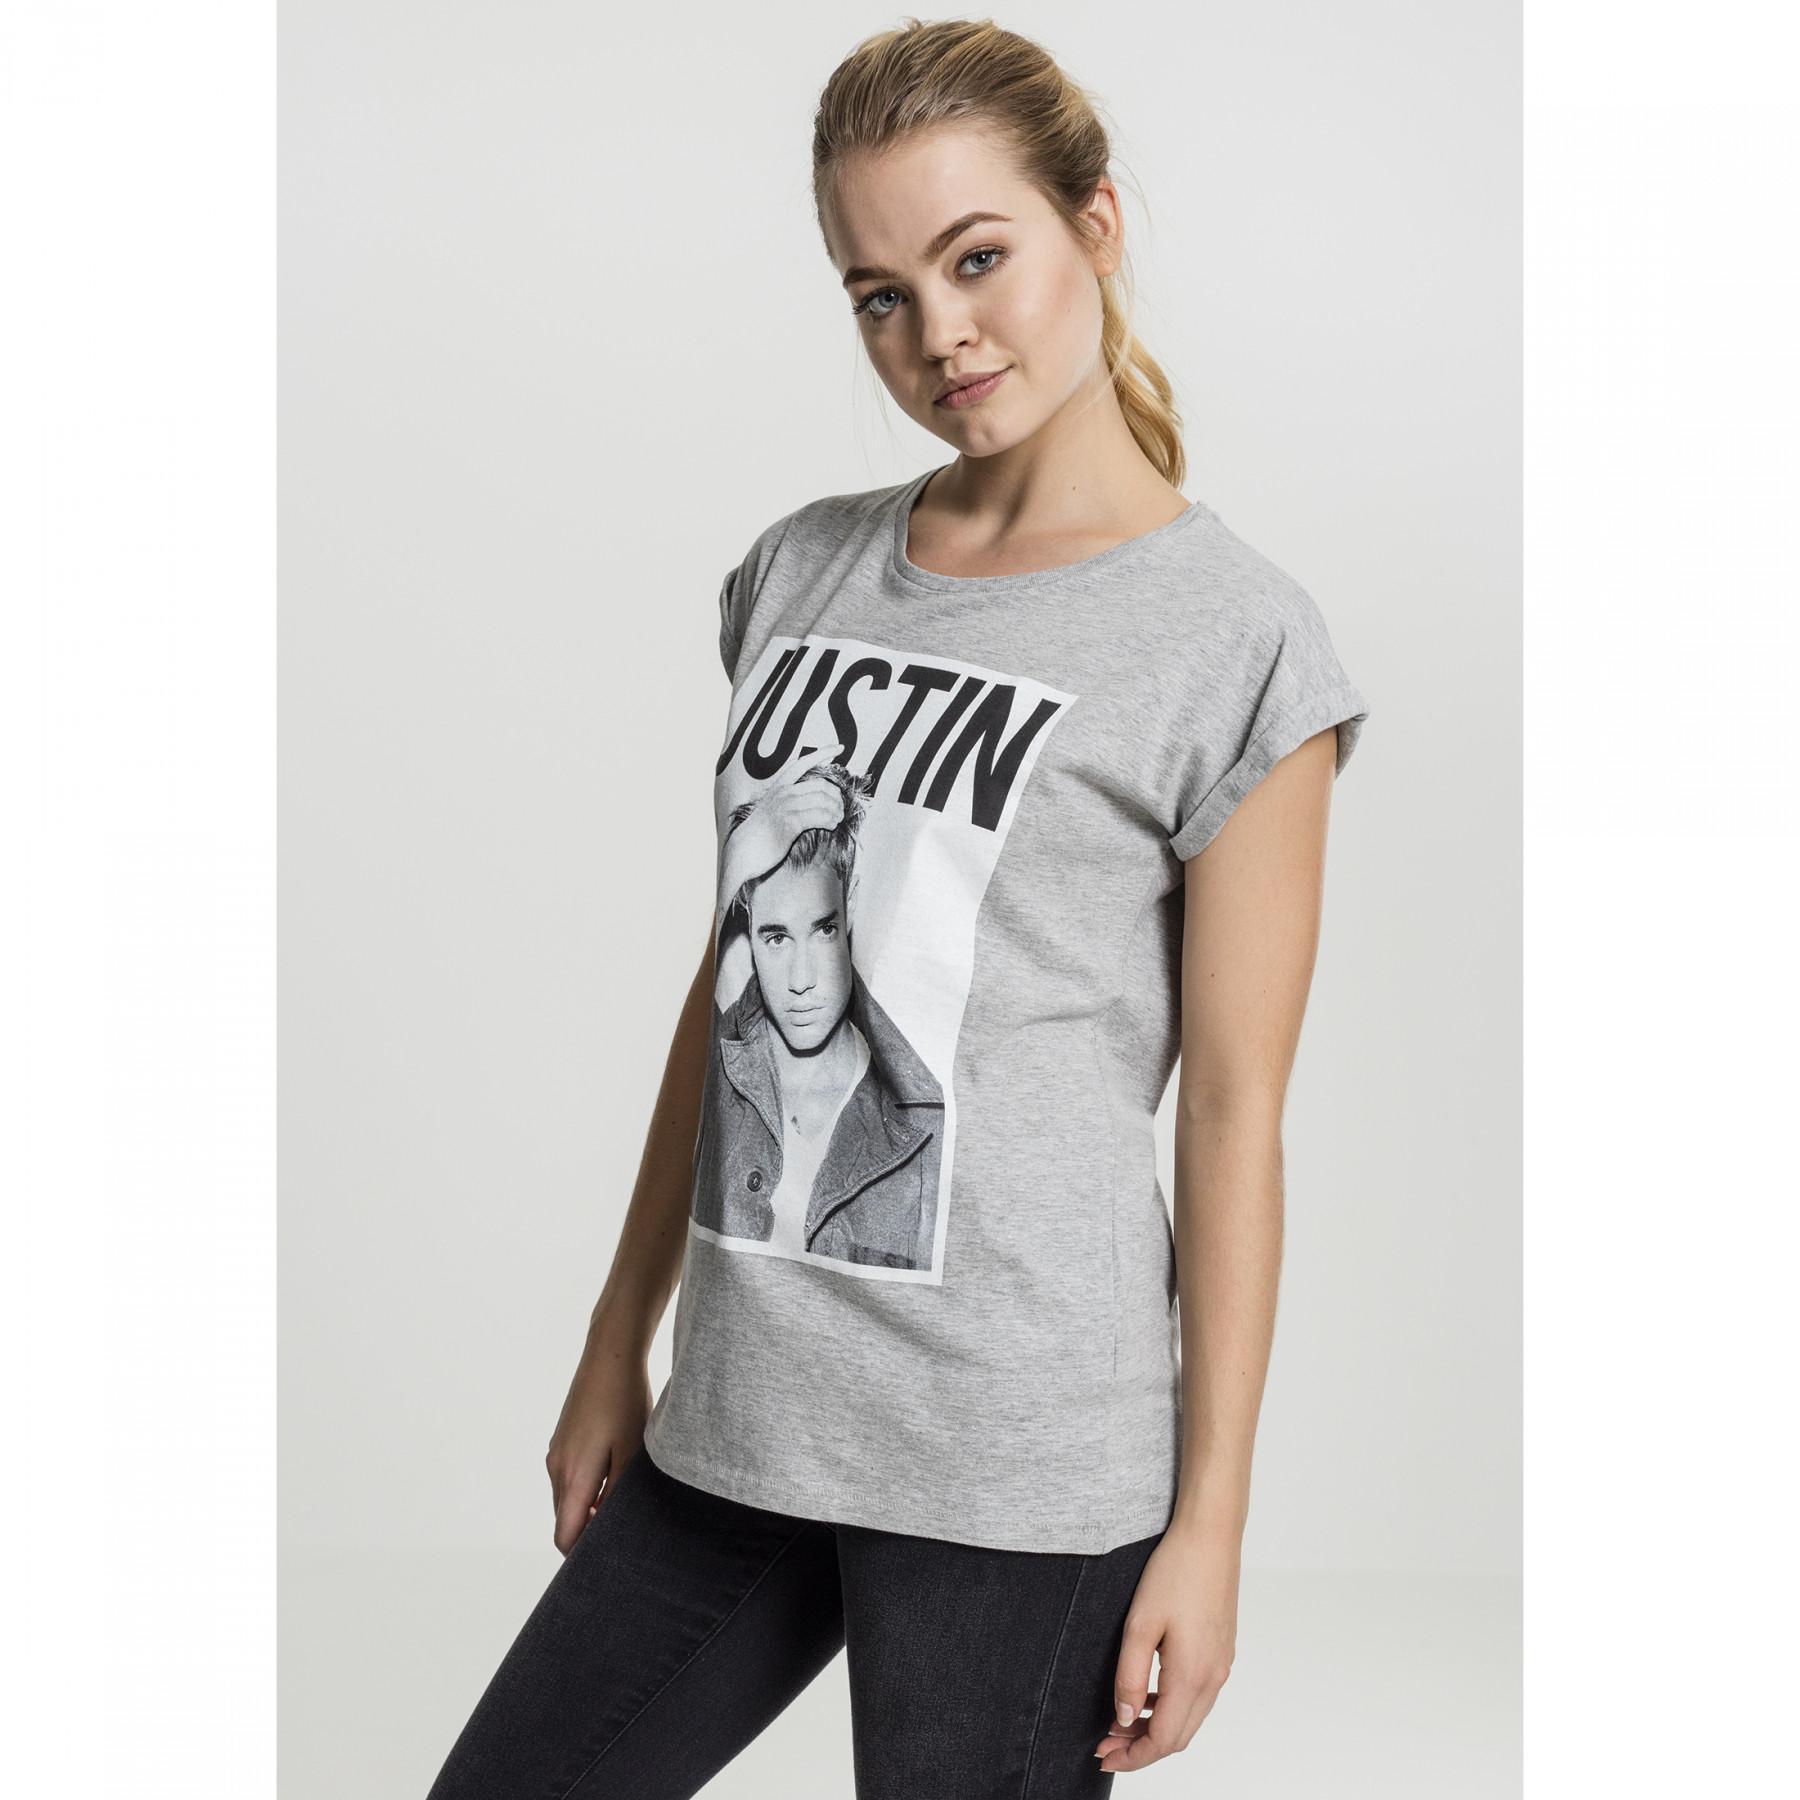 T-shirt femme Urban Classic jutin bieber